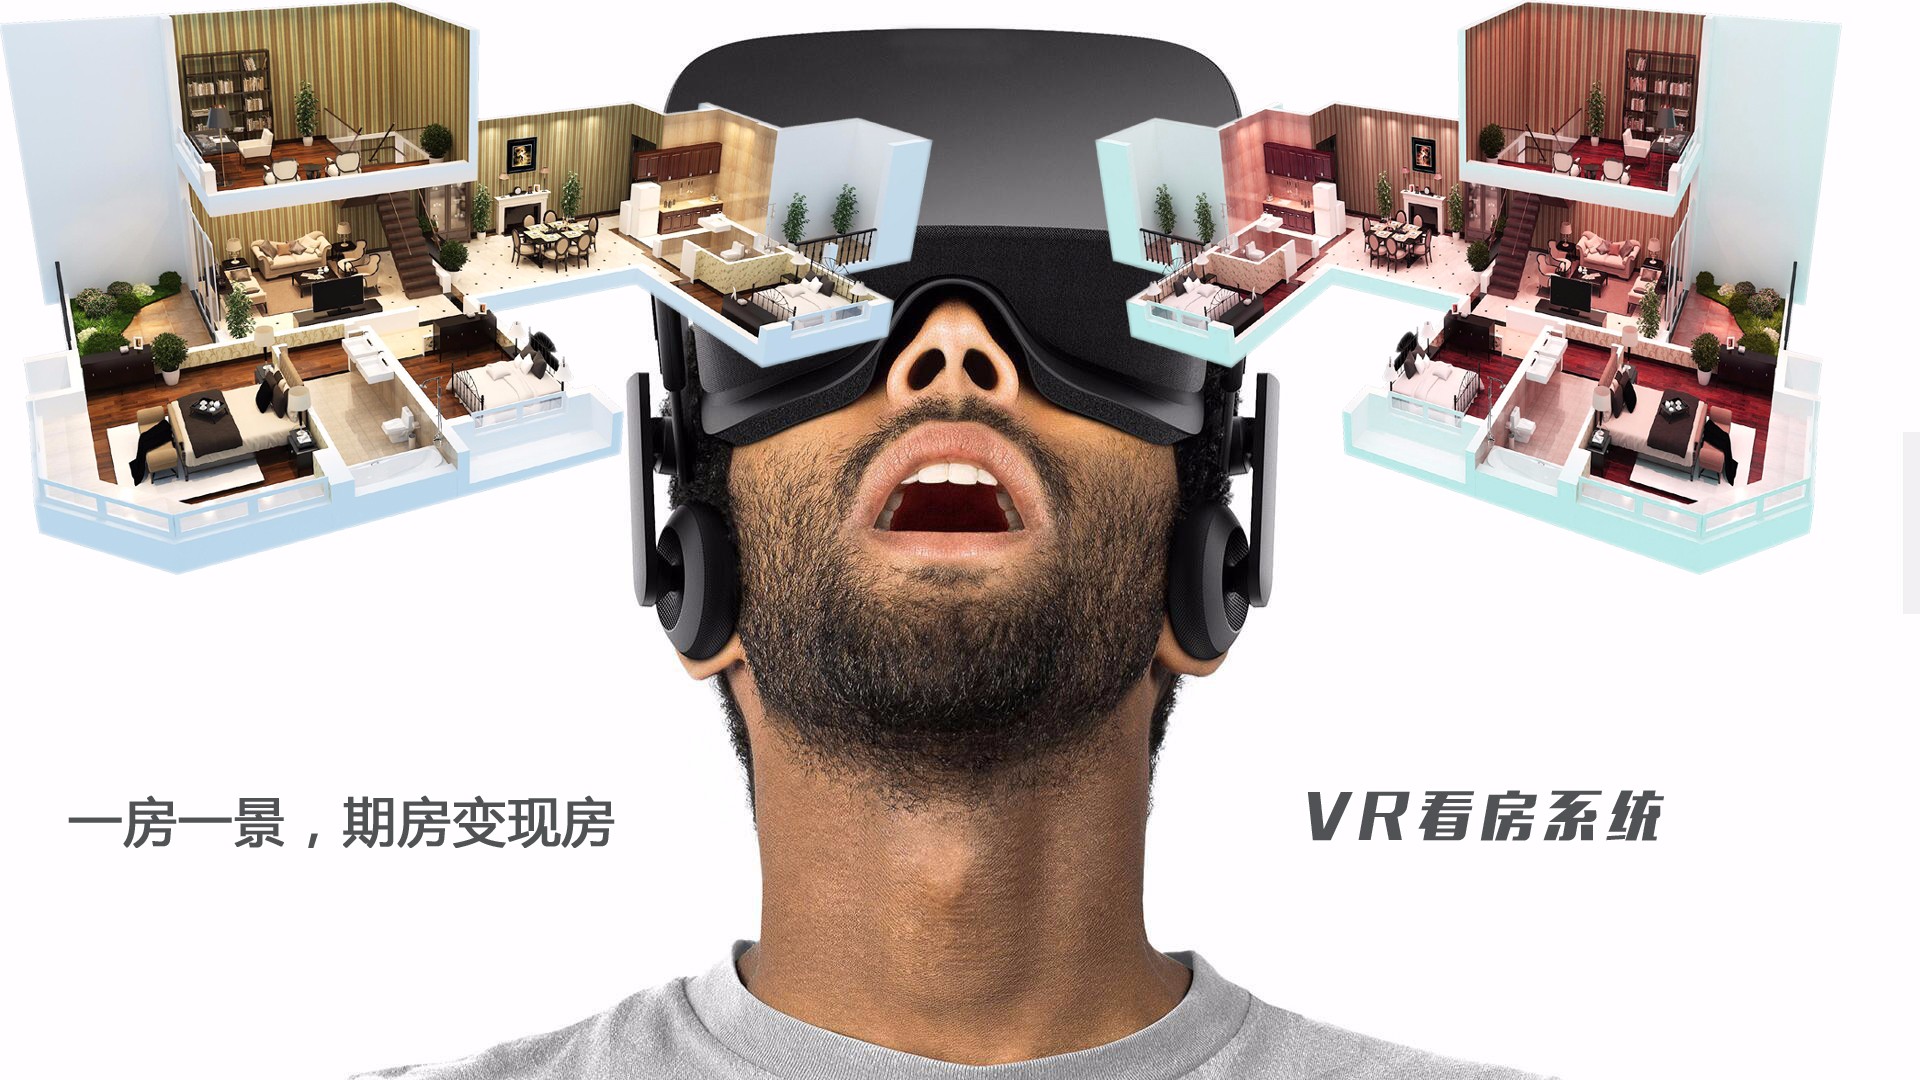 VR看楼优势